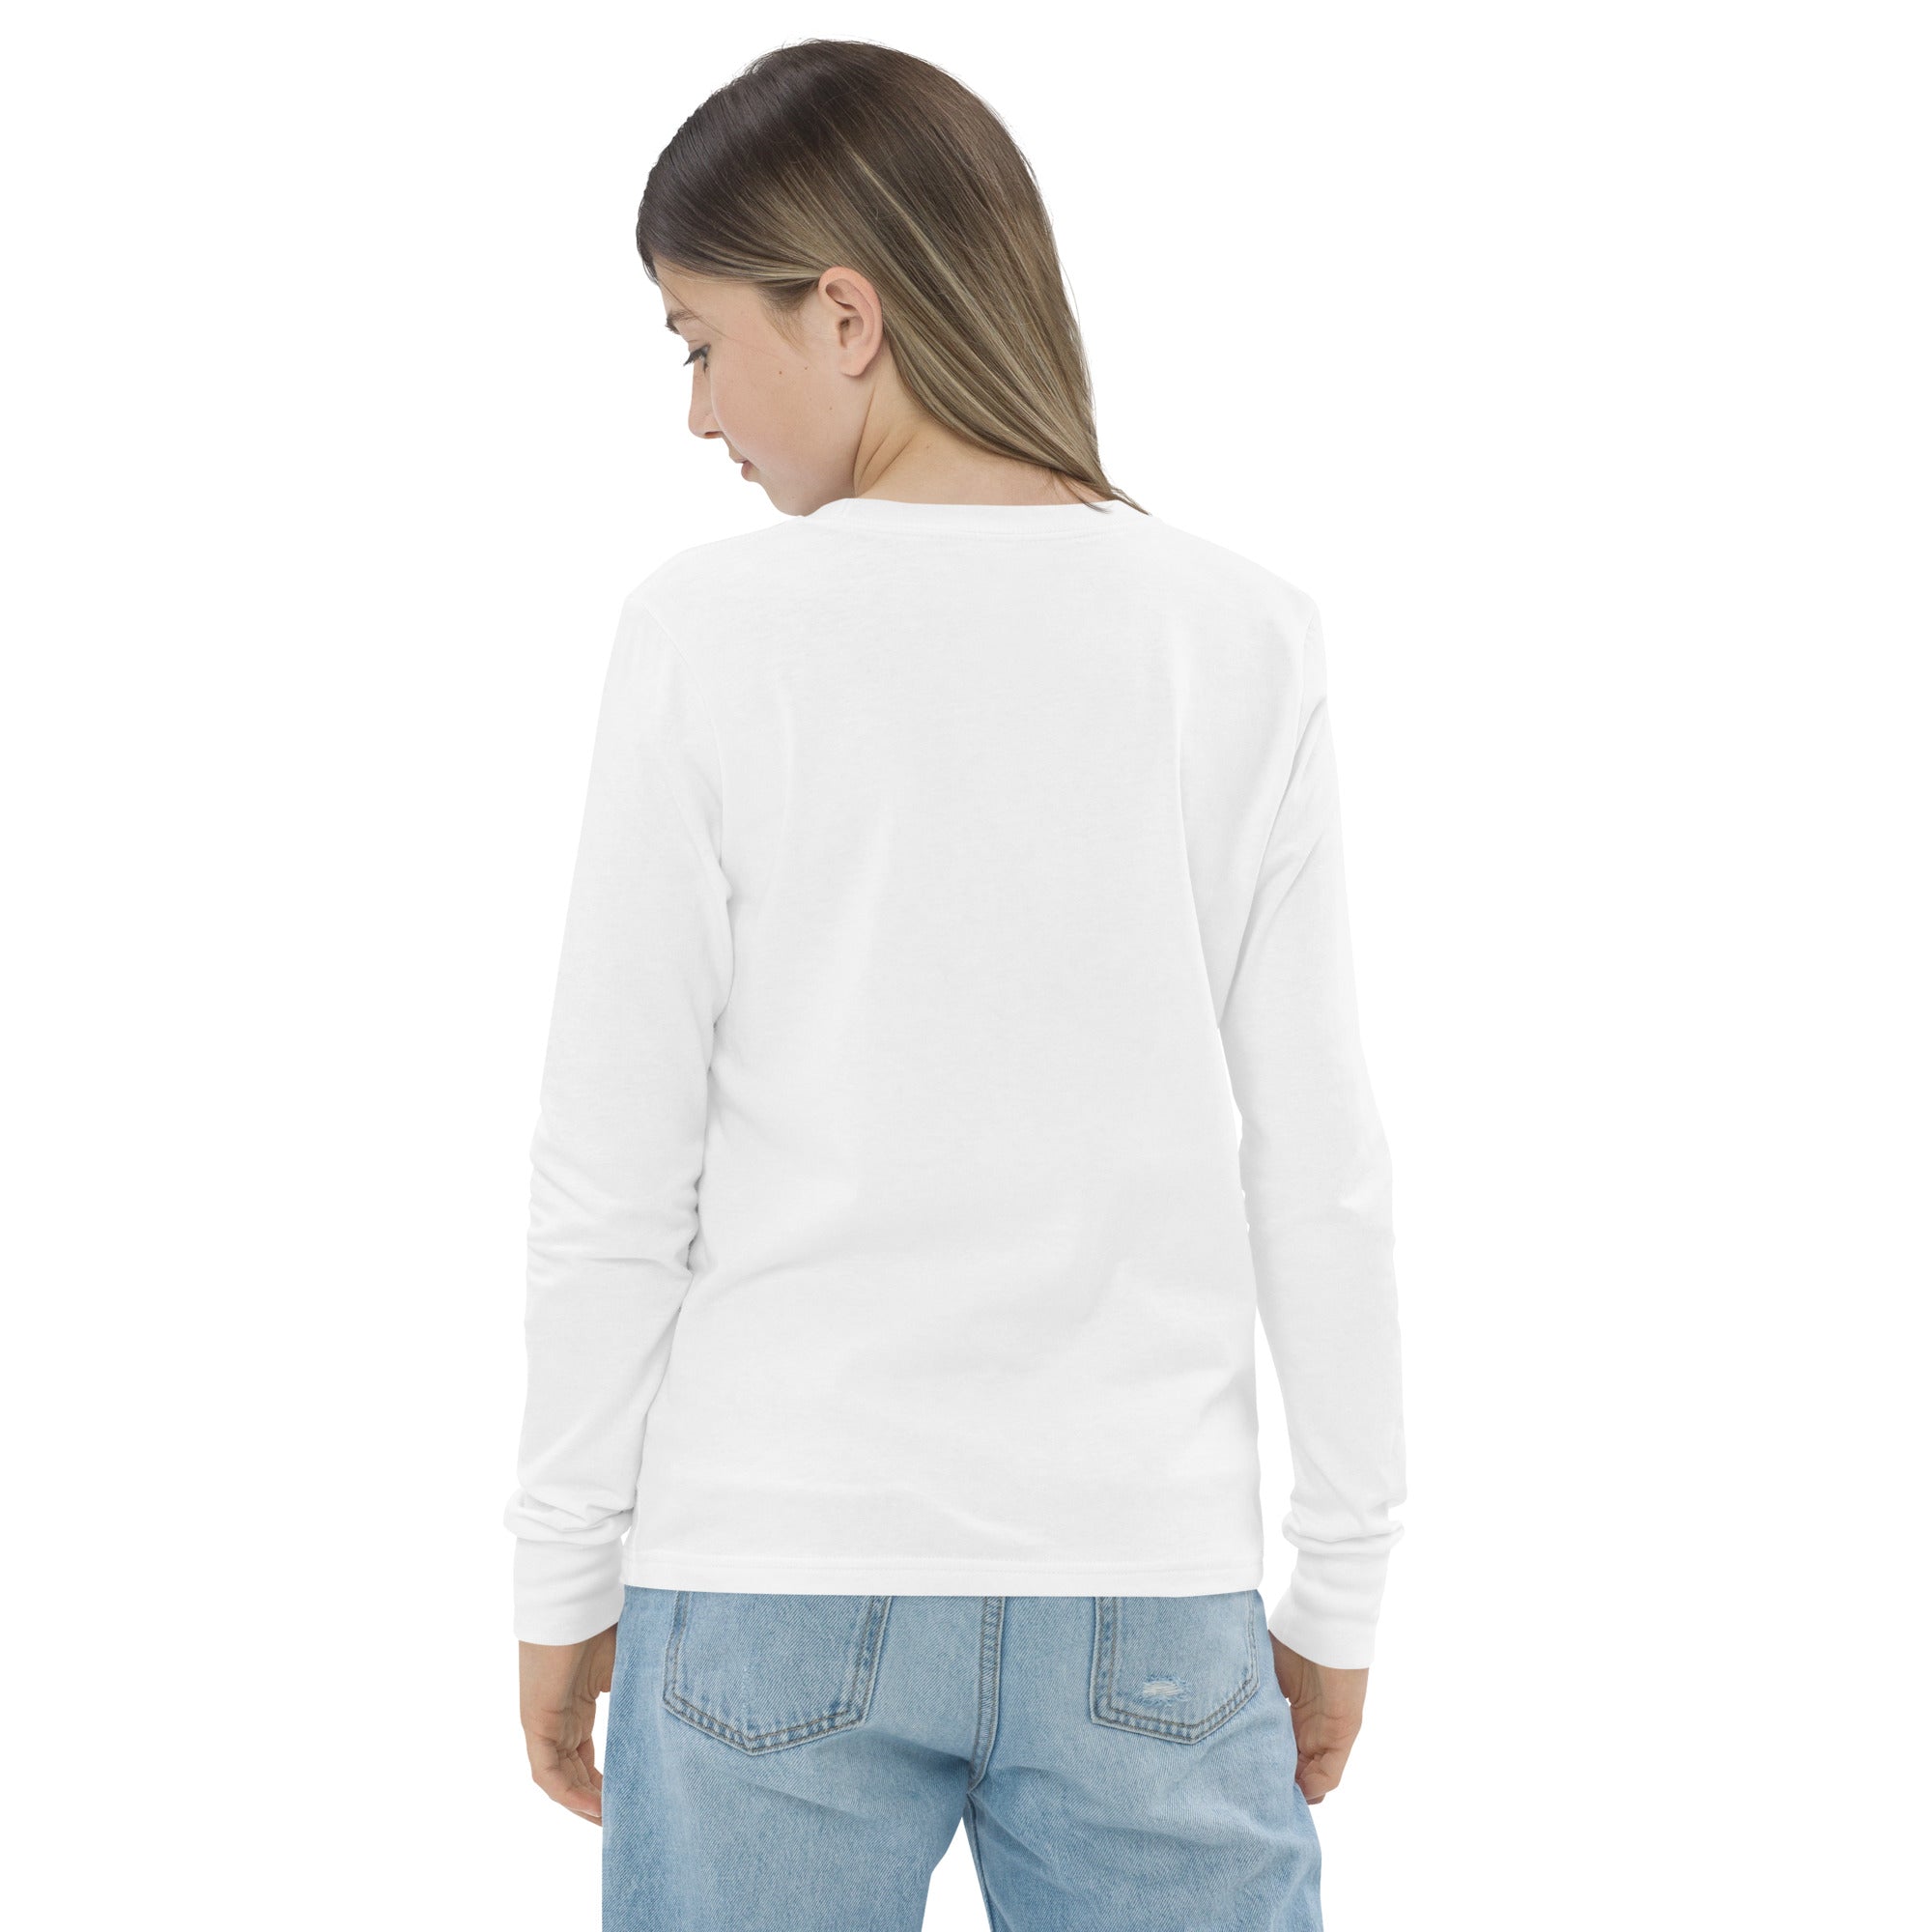 Unisex Youth Long Sleeve Shirt-3